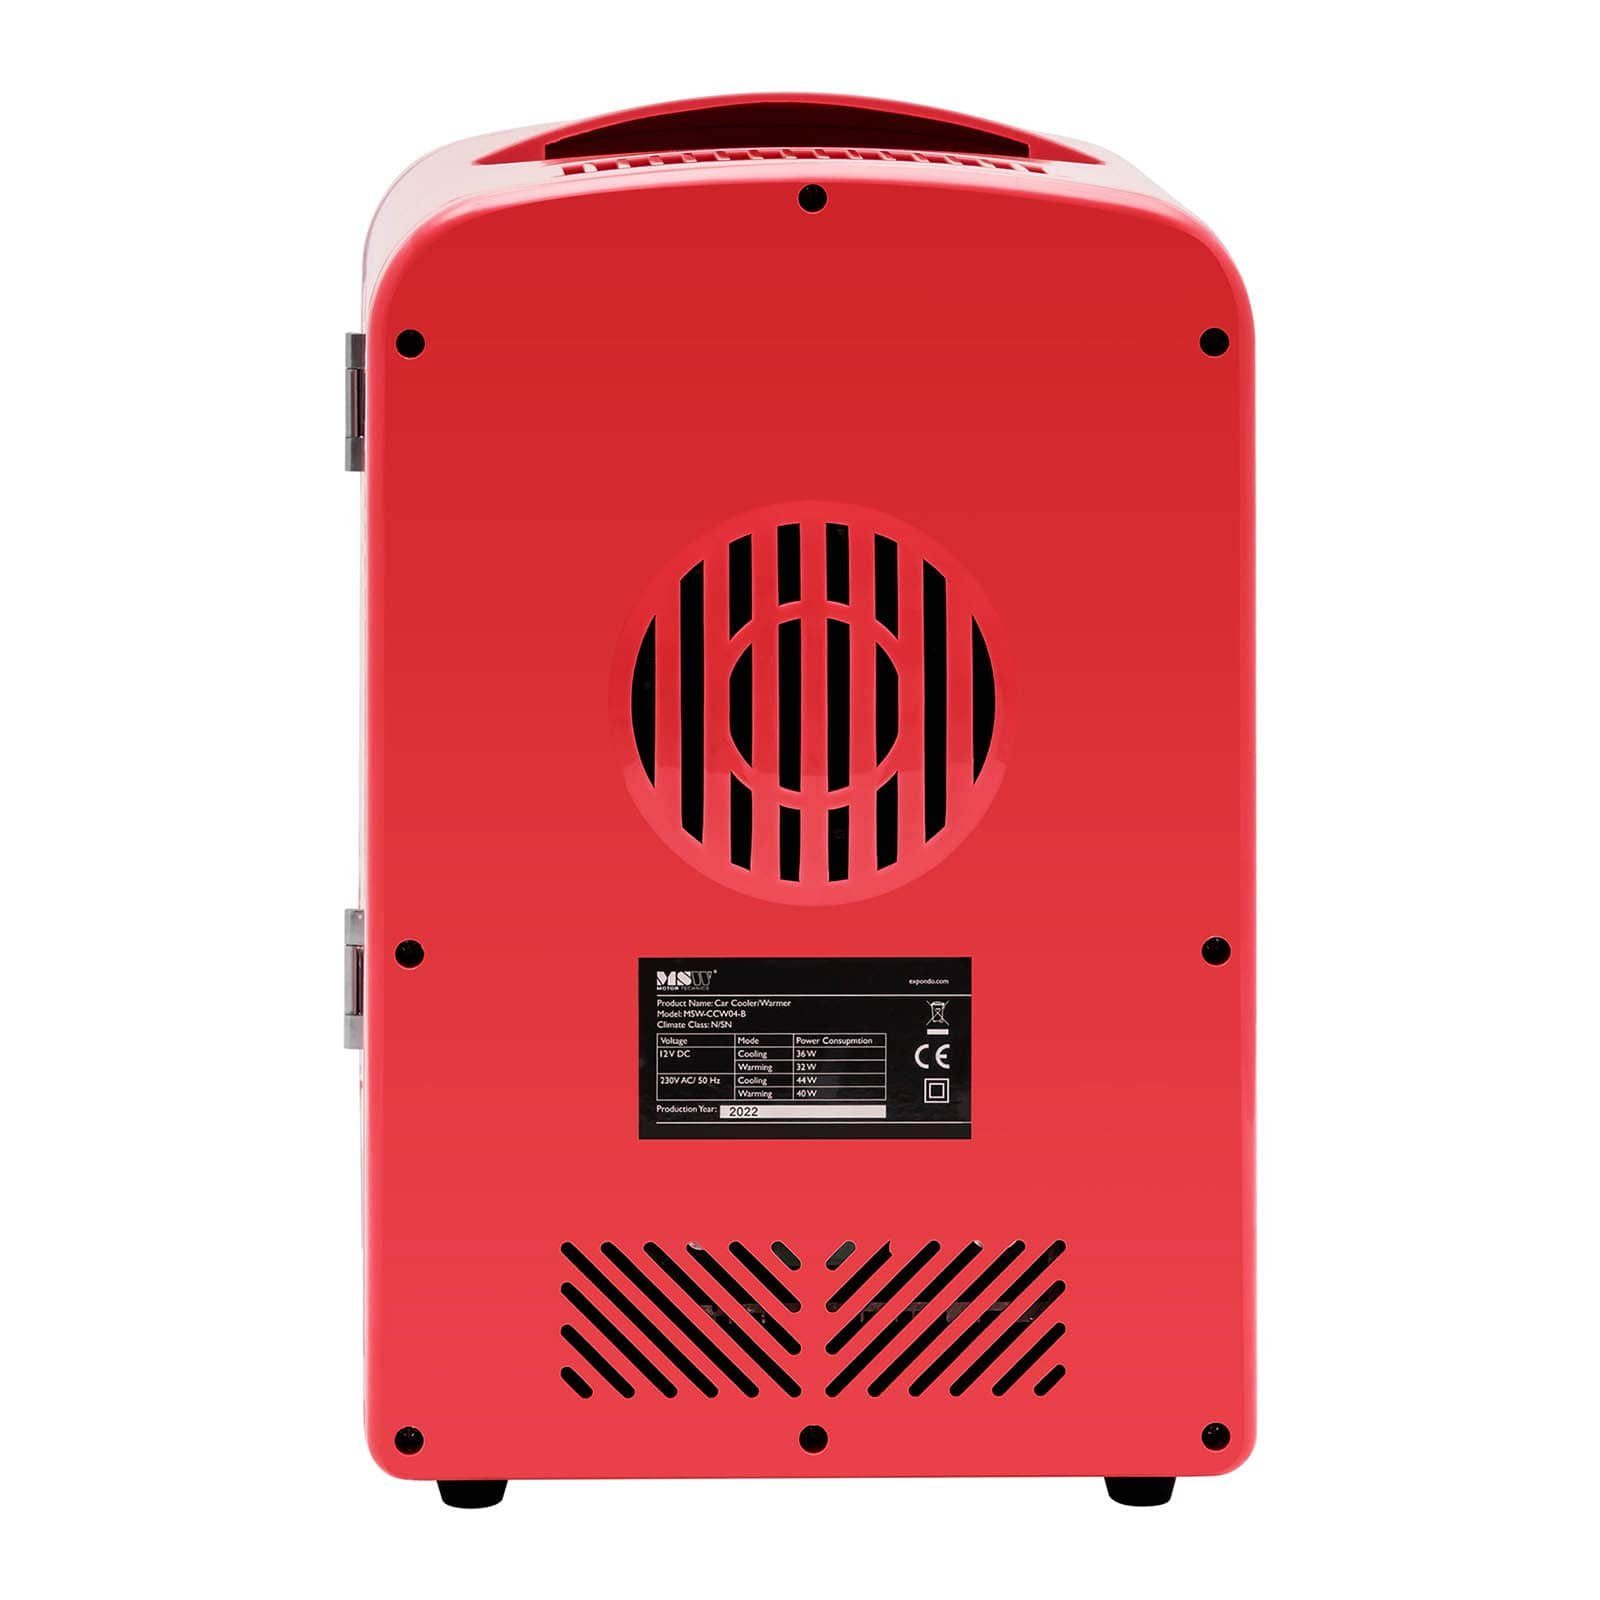 - Mini-Kühlschrank V 12 4L mit V/230 2-in-1-Gerät Elektrische Warmhaltefunktion Kühlbox MSW